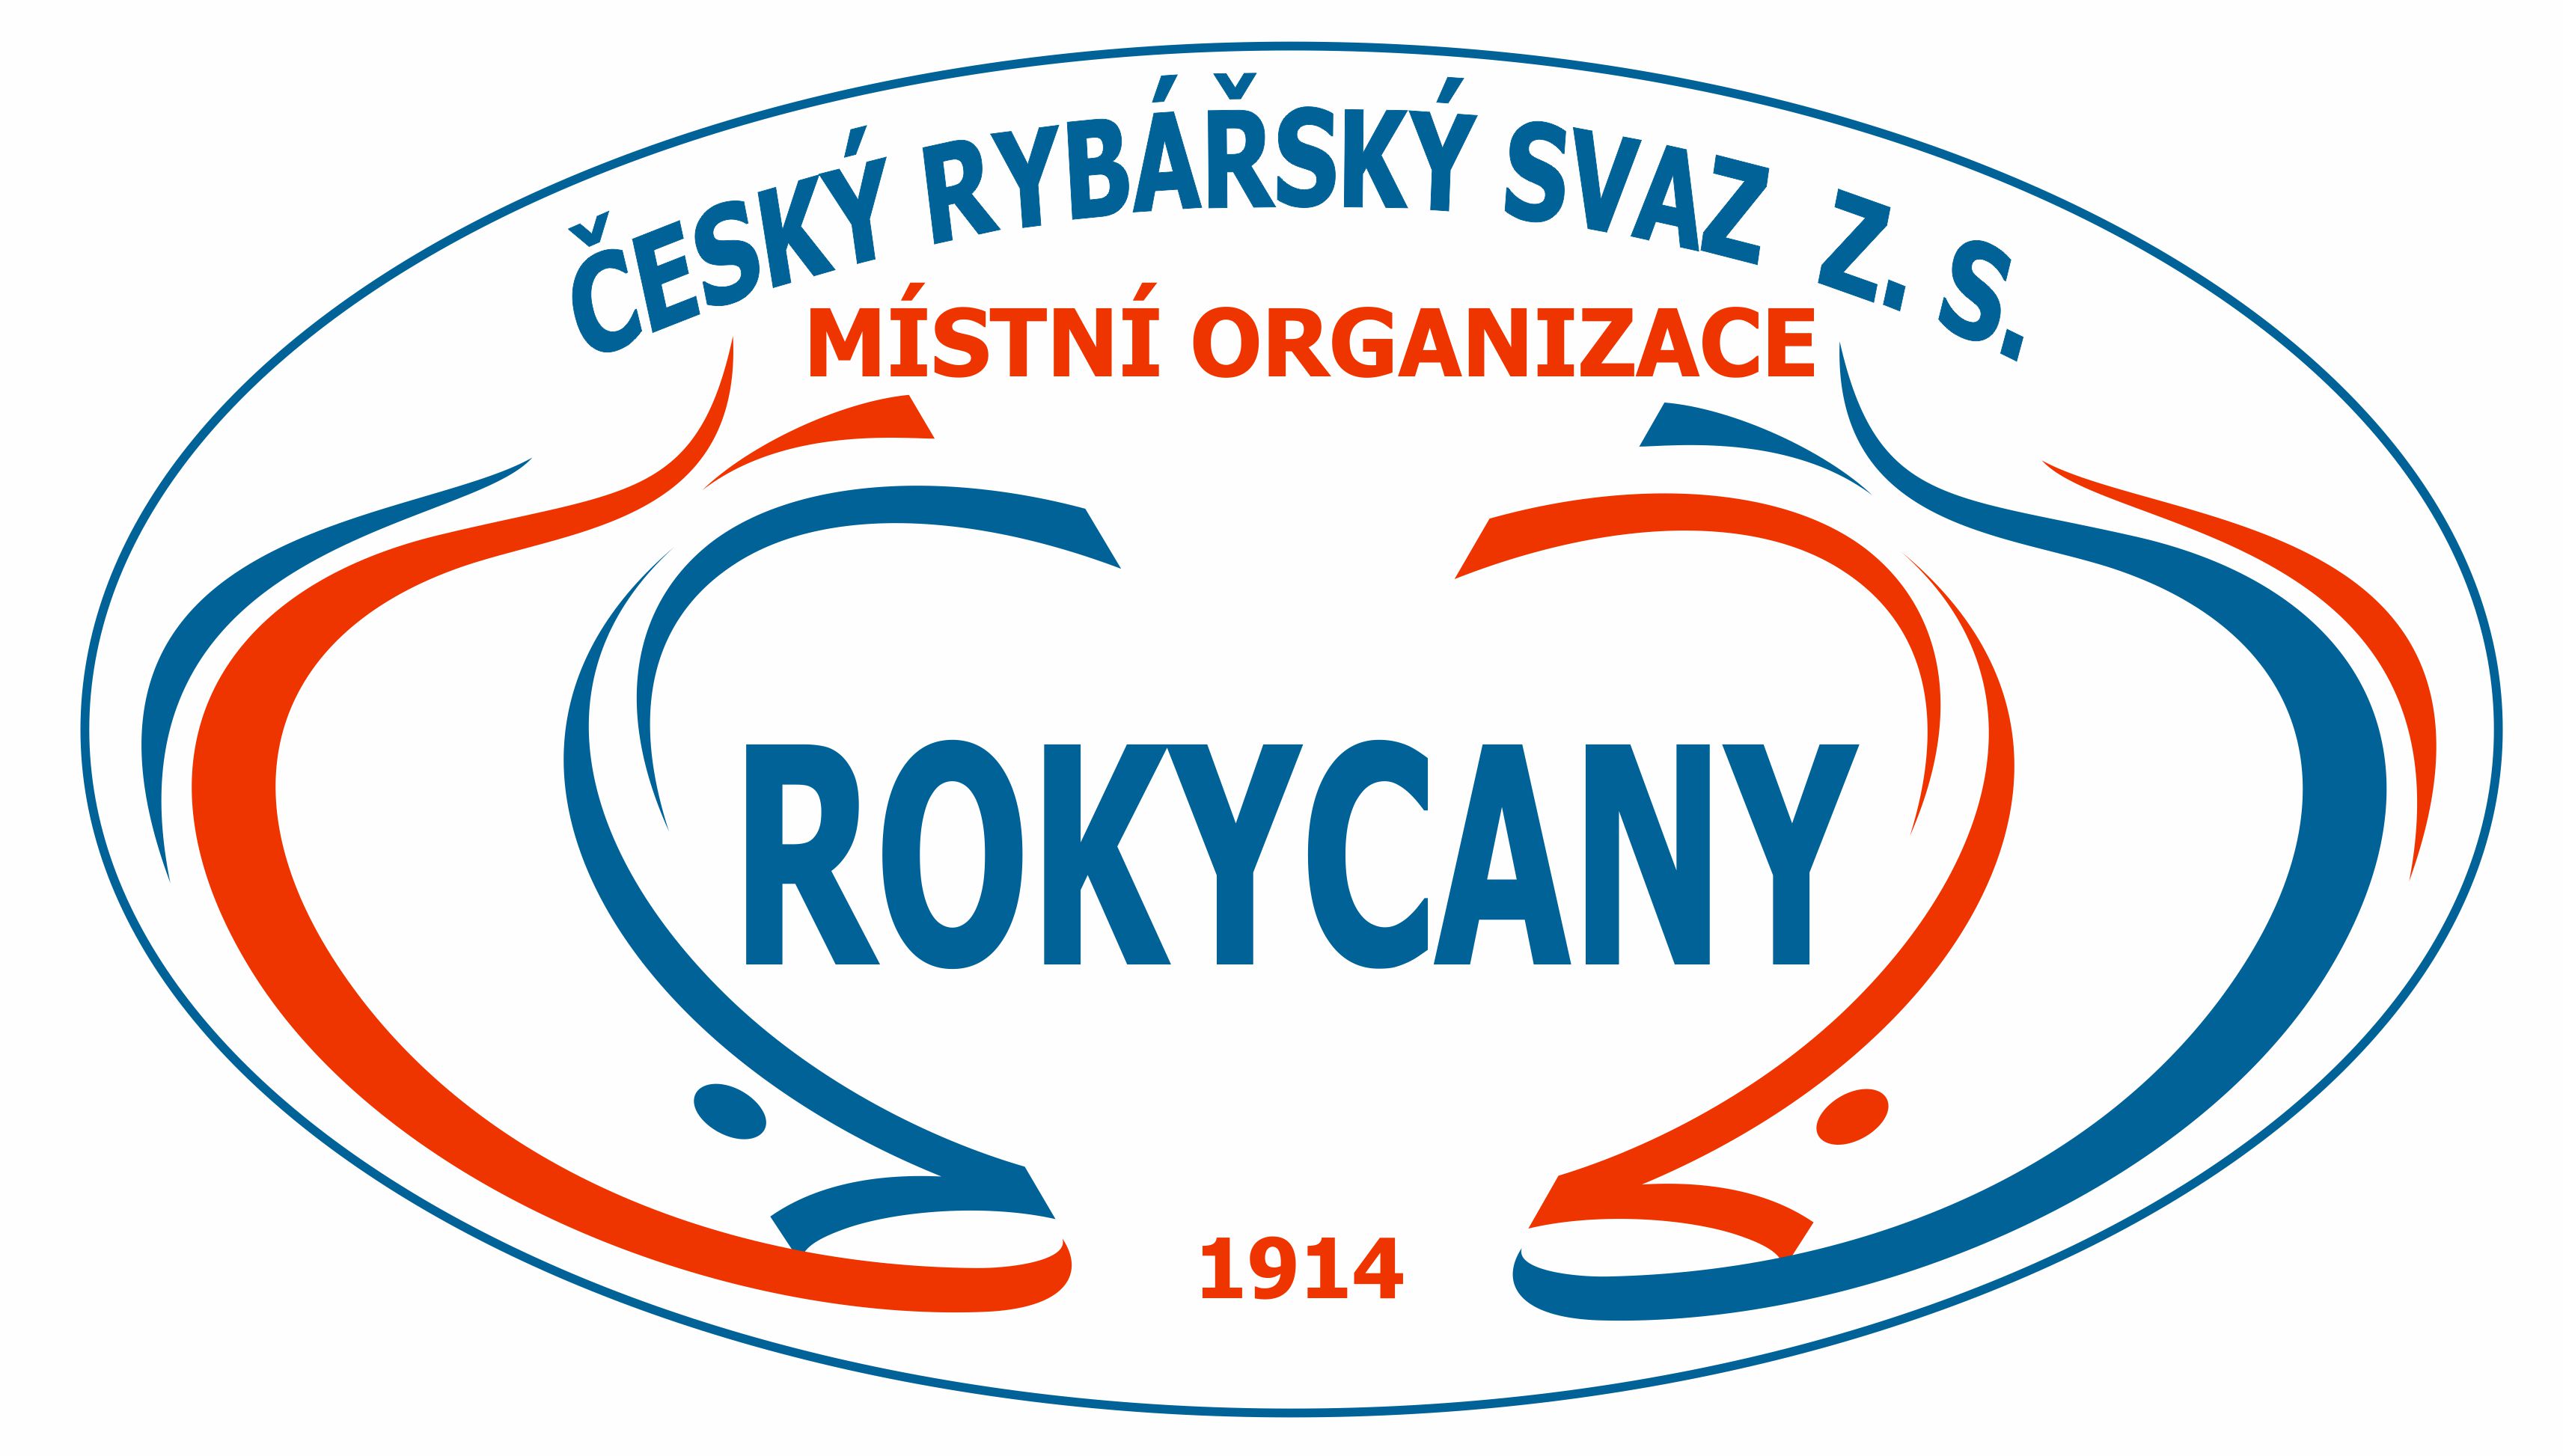 Český rybářský svaz, z. s., místní organizace Rokycany